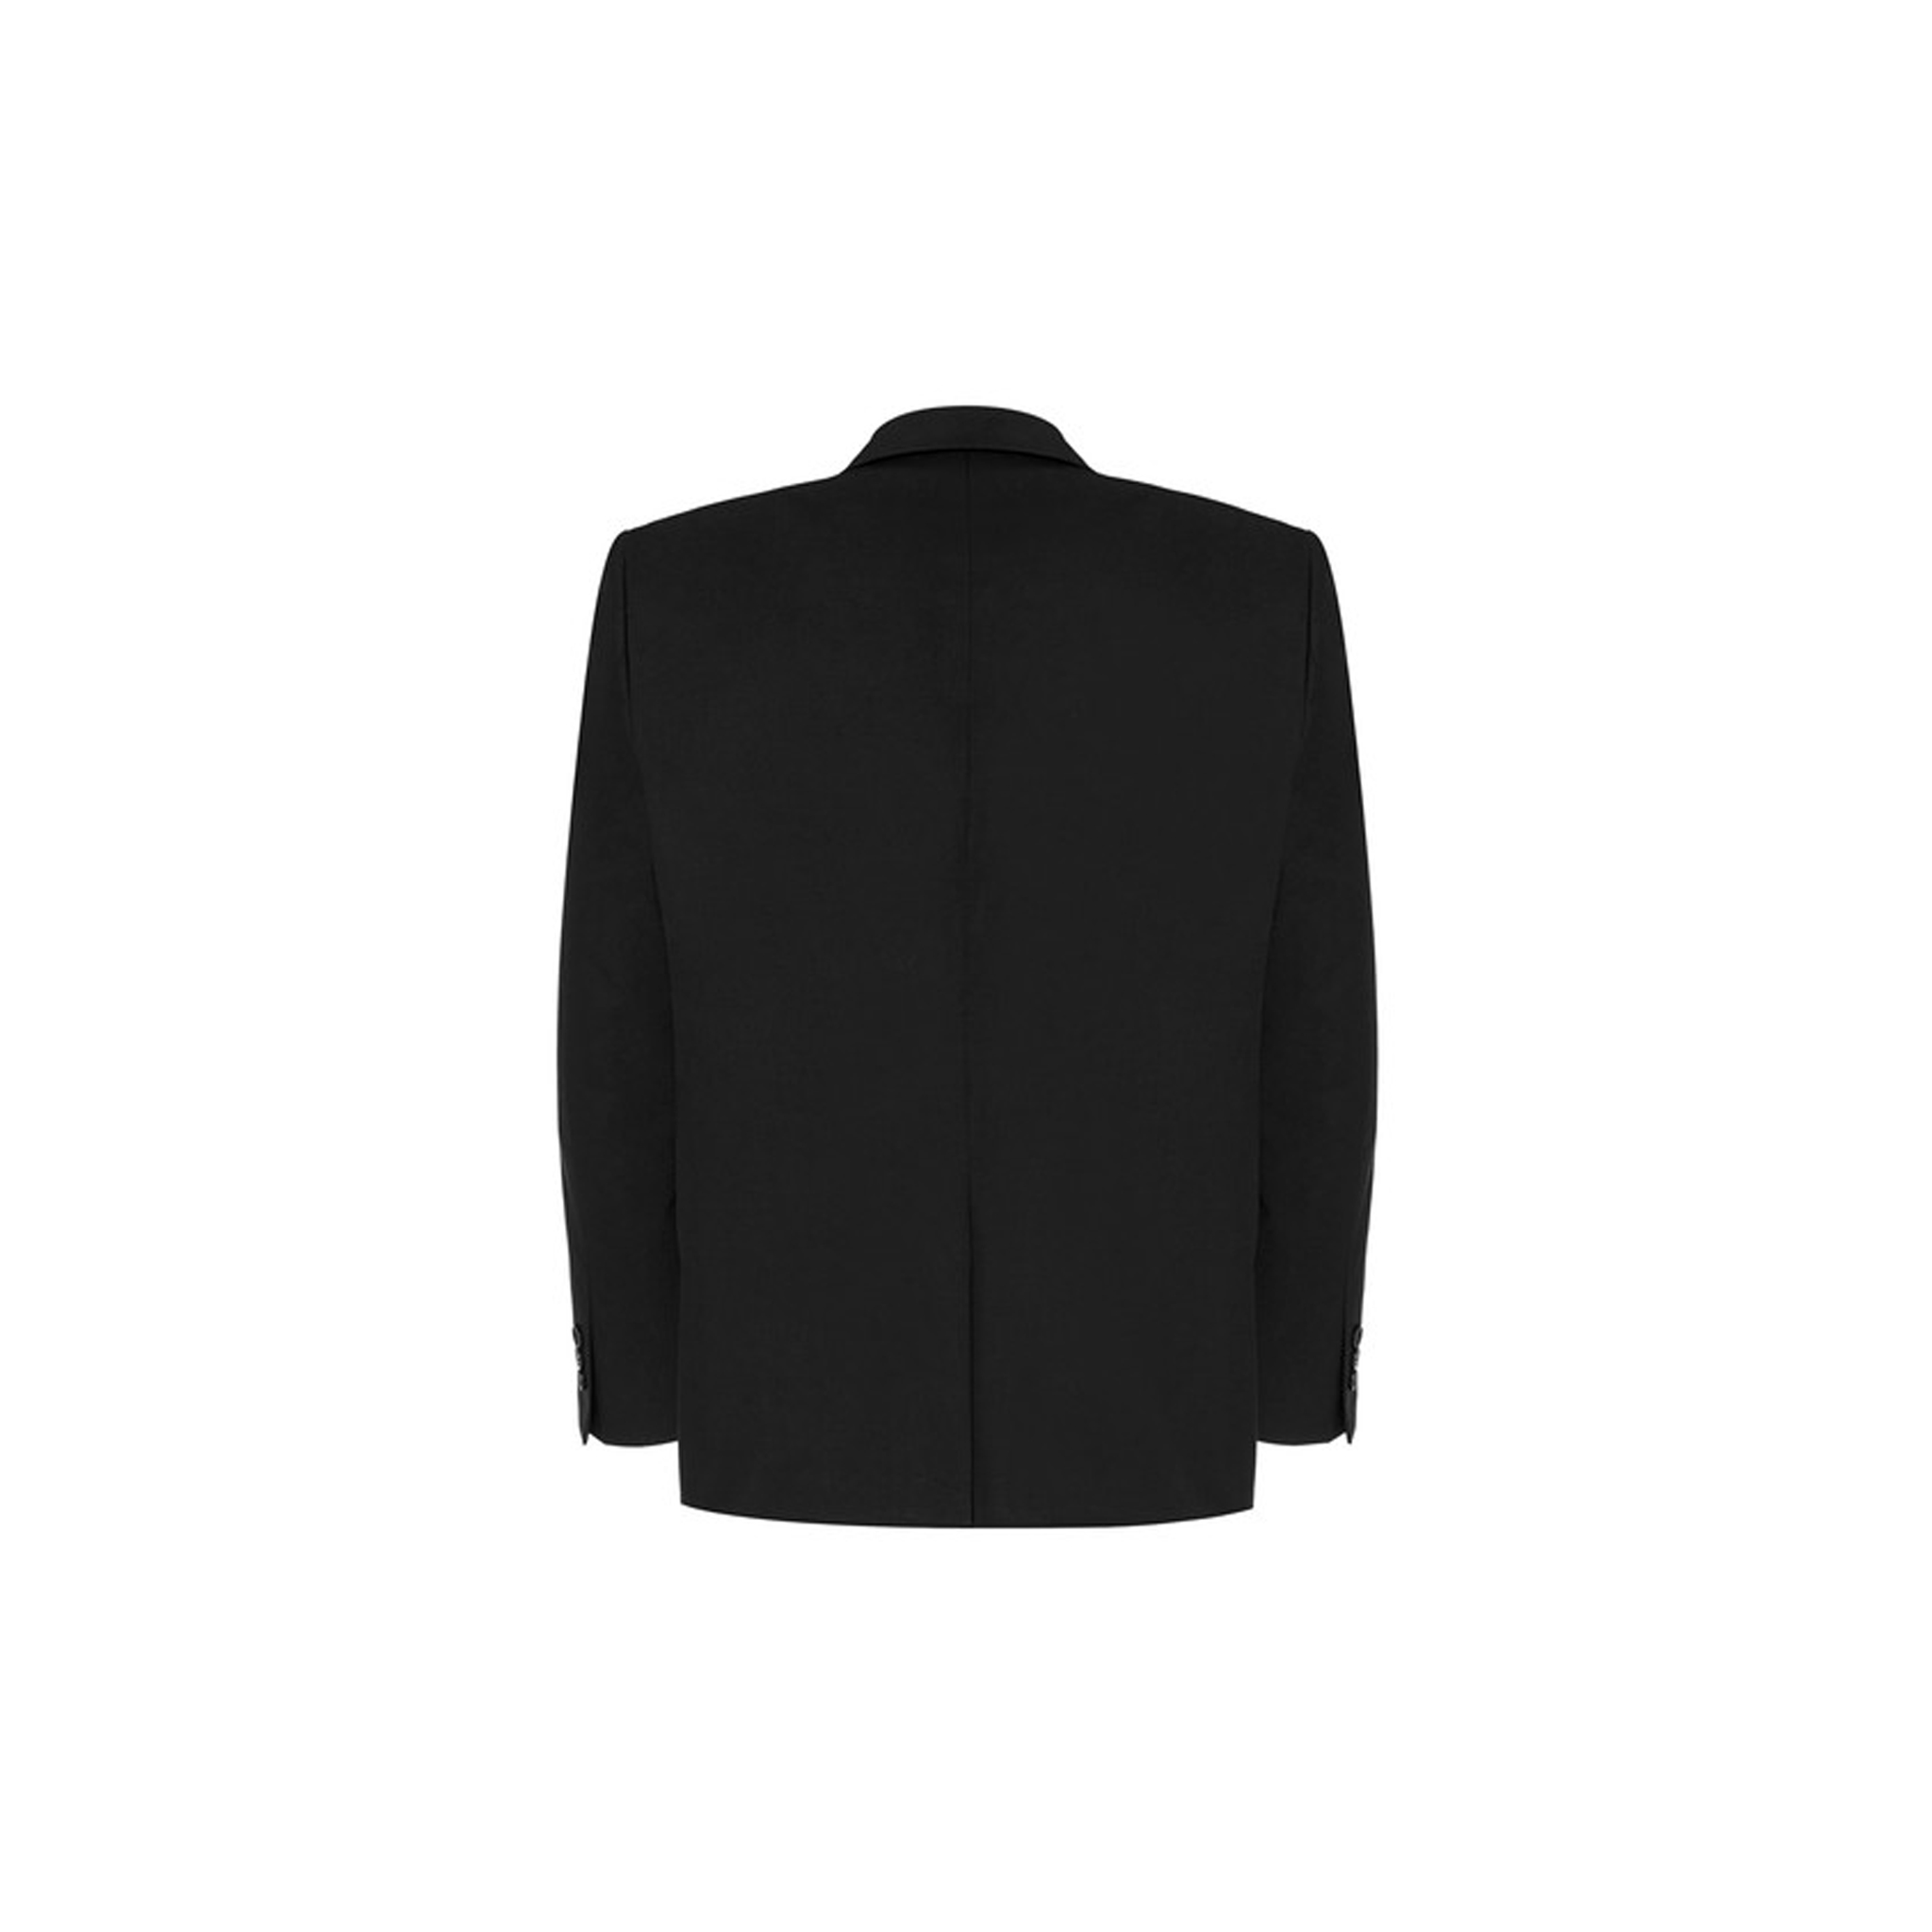 Black Boys Plus Size Sturdy Fit Luxury Suit Jacket 36